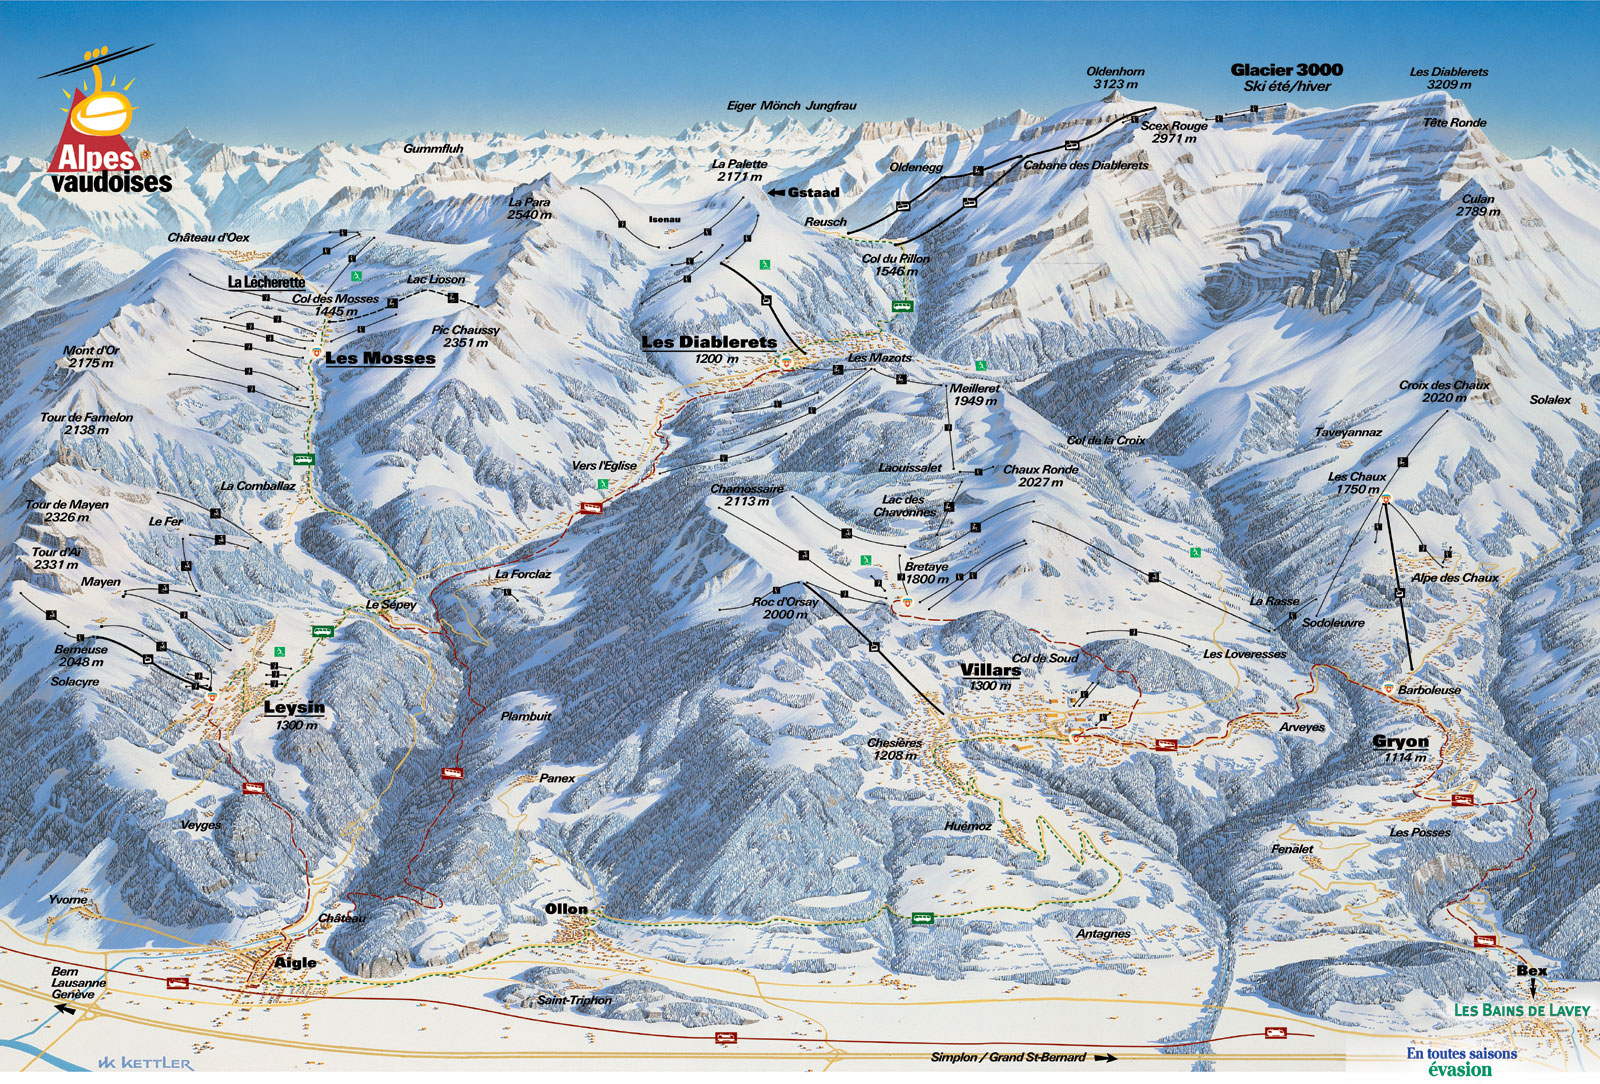 Villars - ein Skigebiet mit mehr als 225 km Skipisten zwischen 1'300 und 3'000 m Höhe.